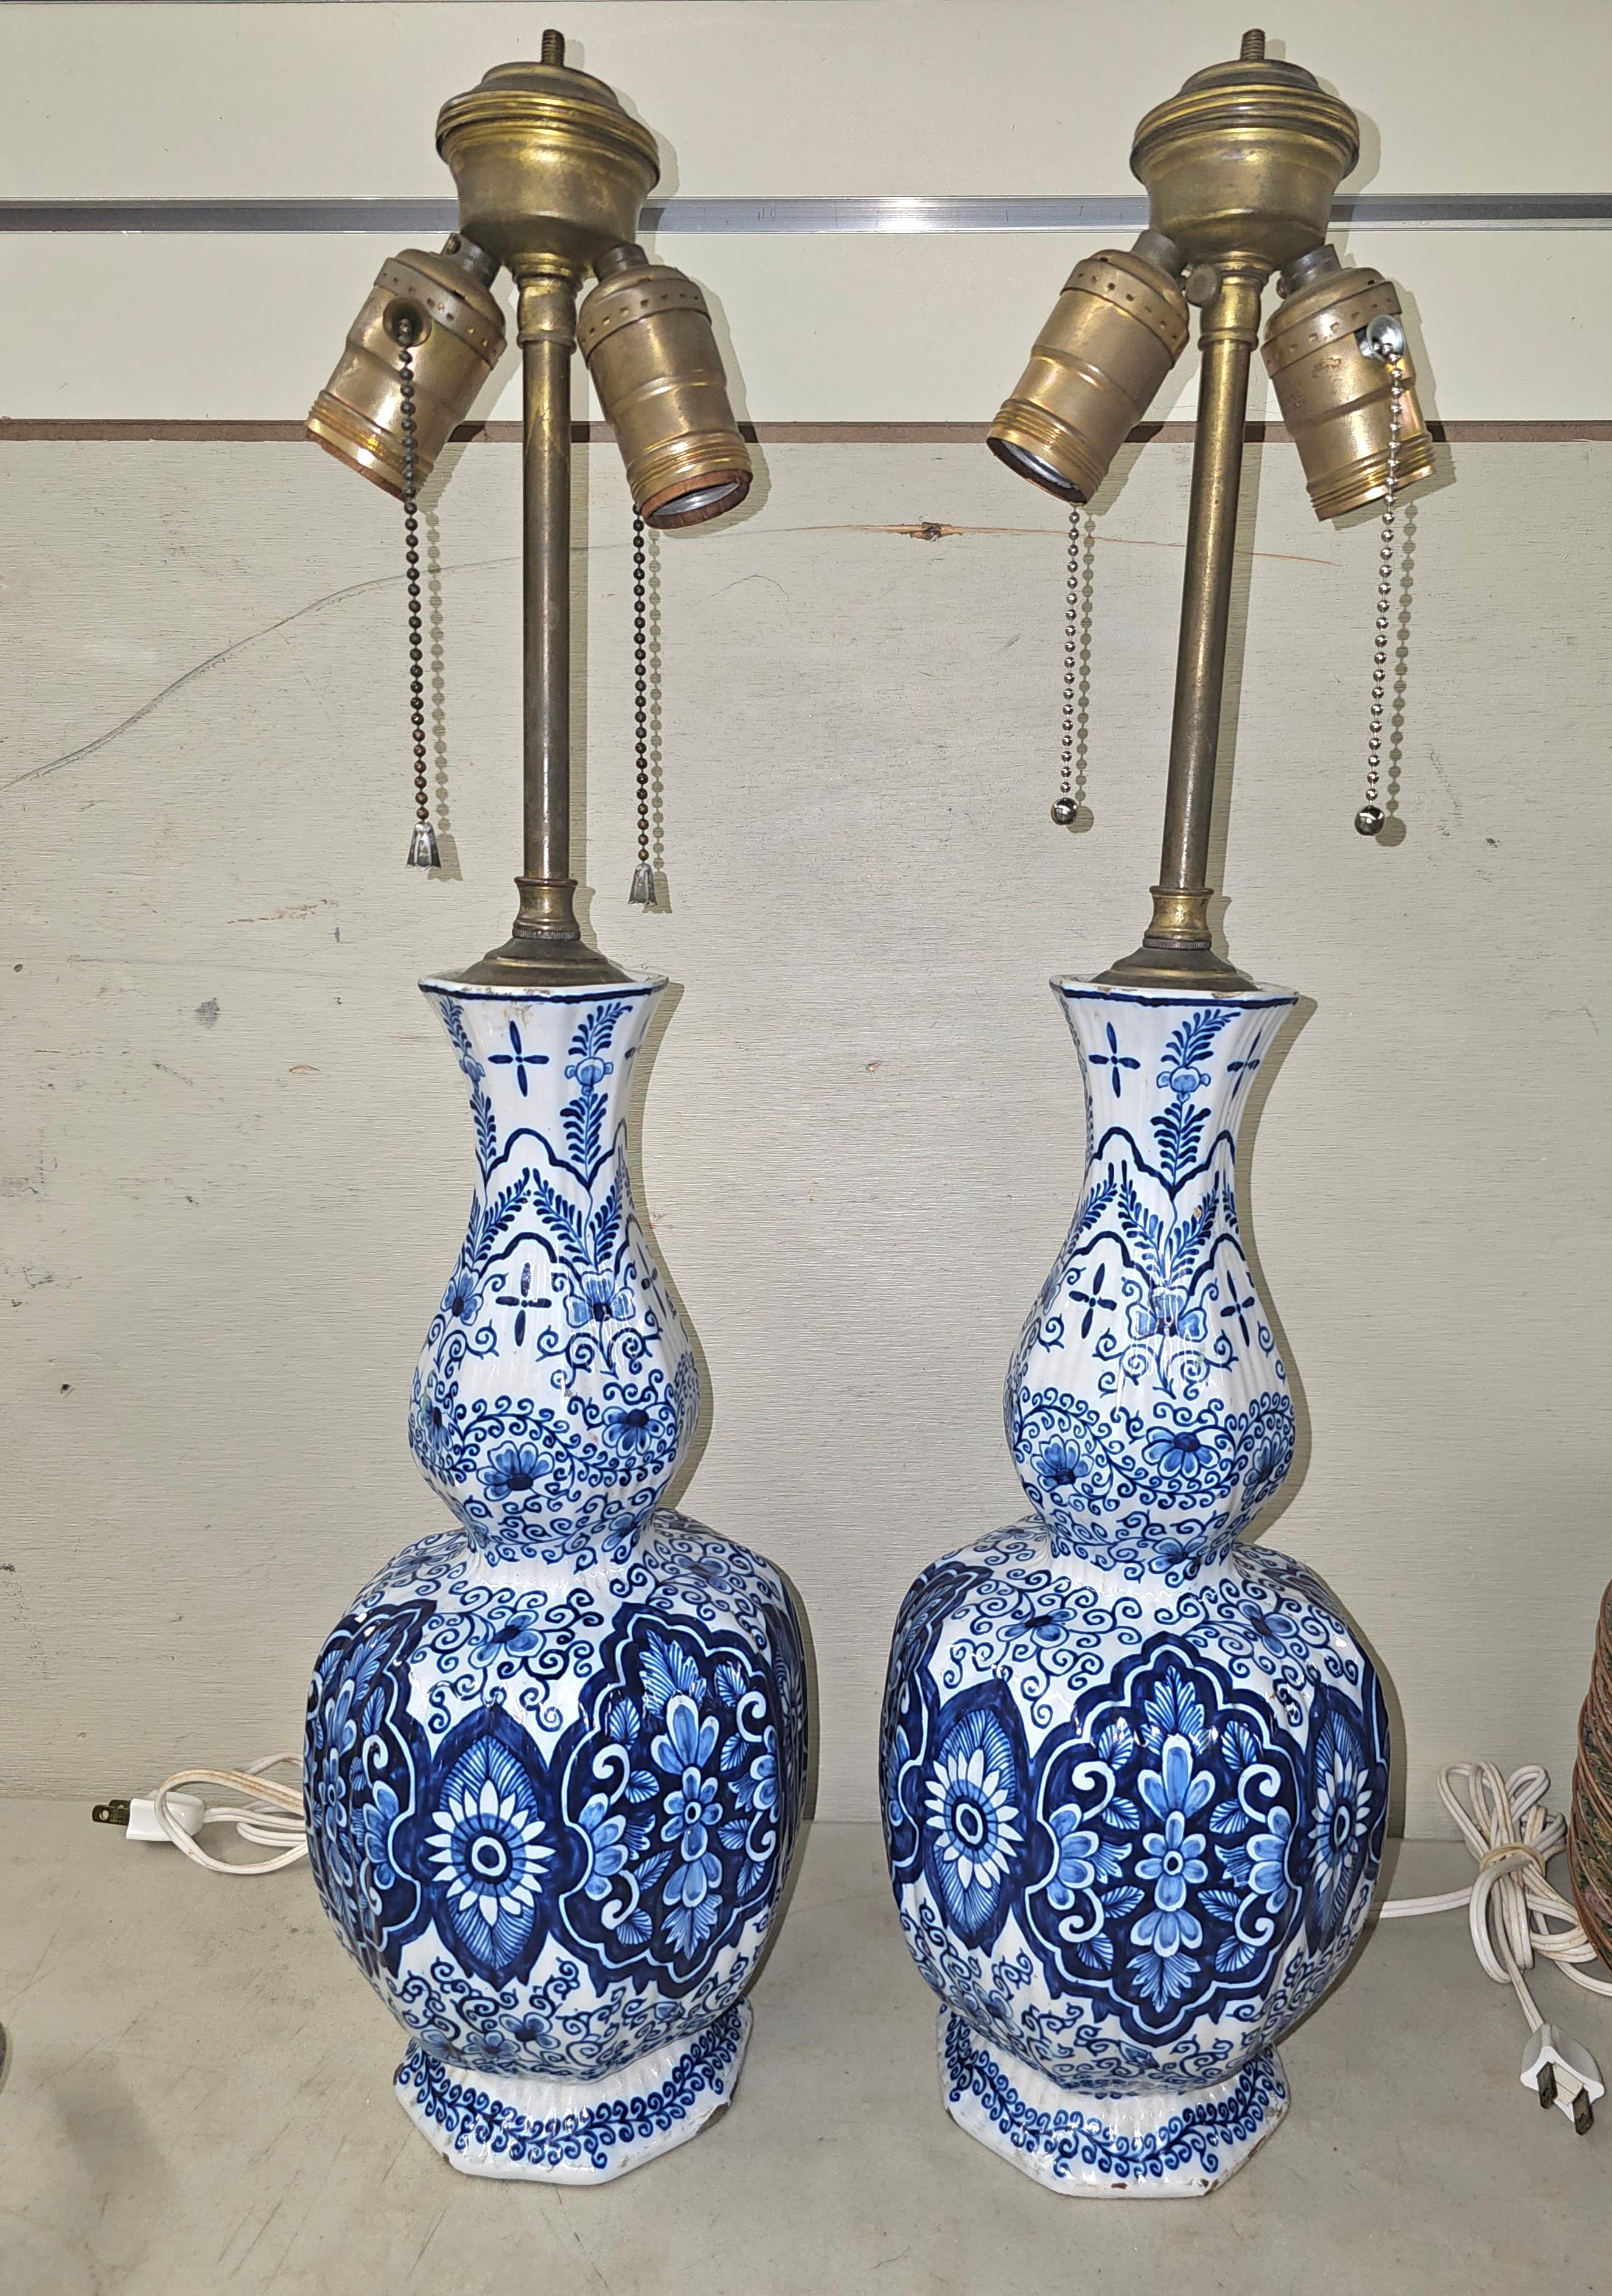 Colonial hollandais Paire de vases à poser ou suspendre de lampe bleu et blanc Royal Delft du 18e siècle, signés Van Duijn en vente